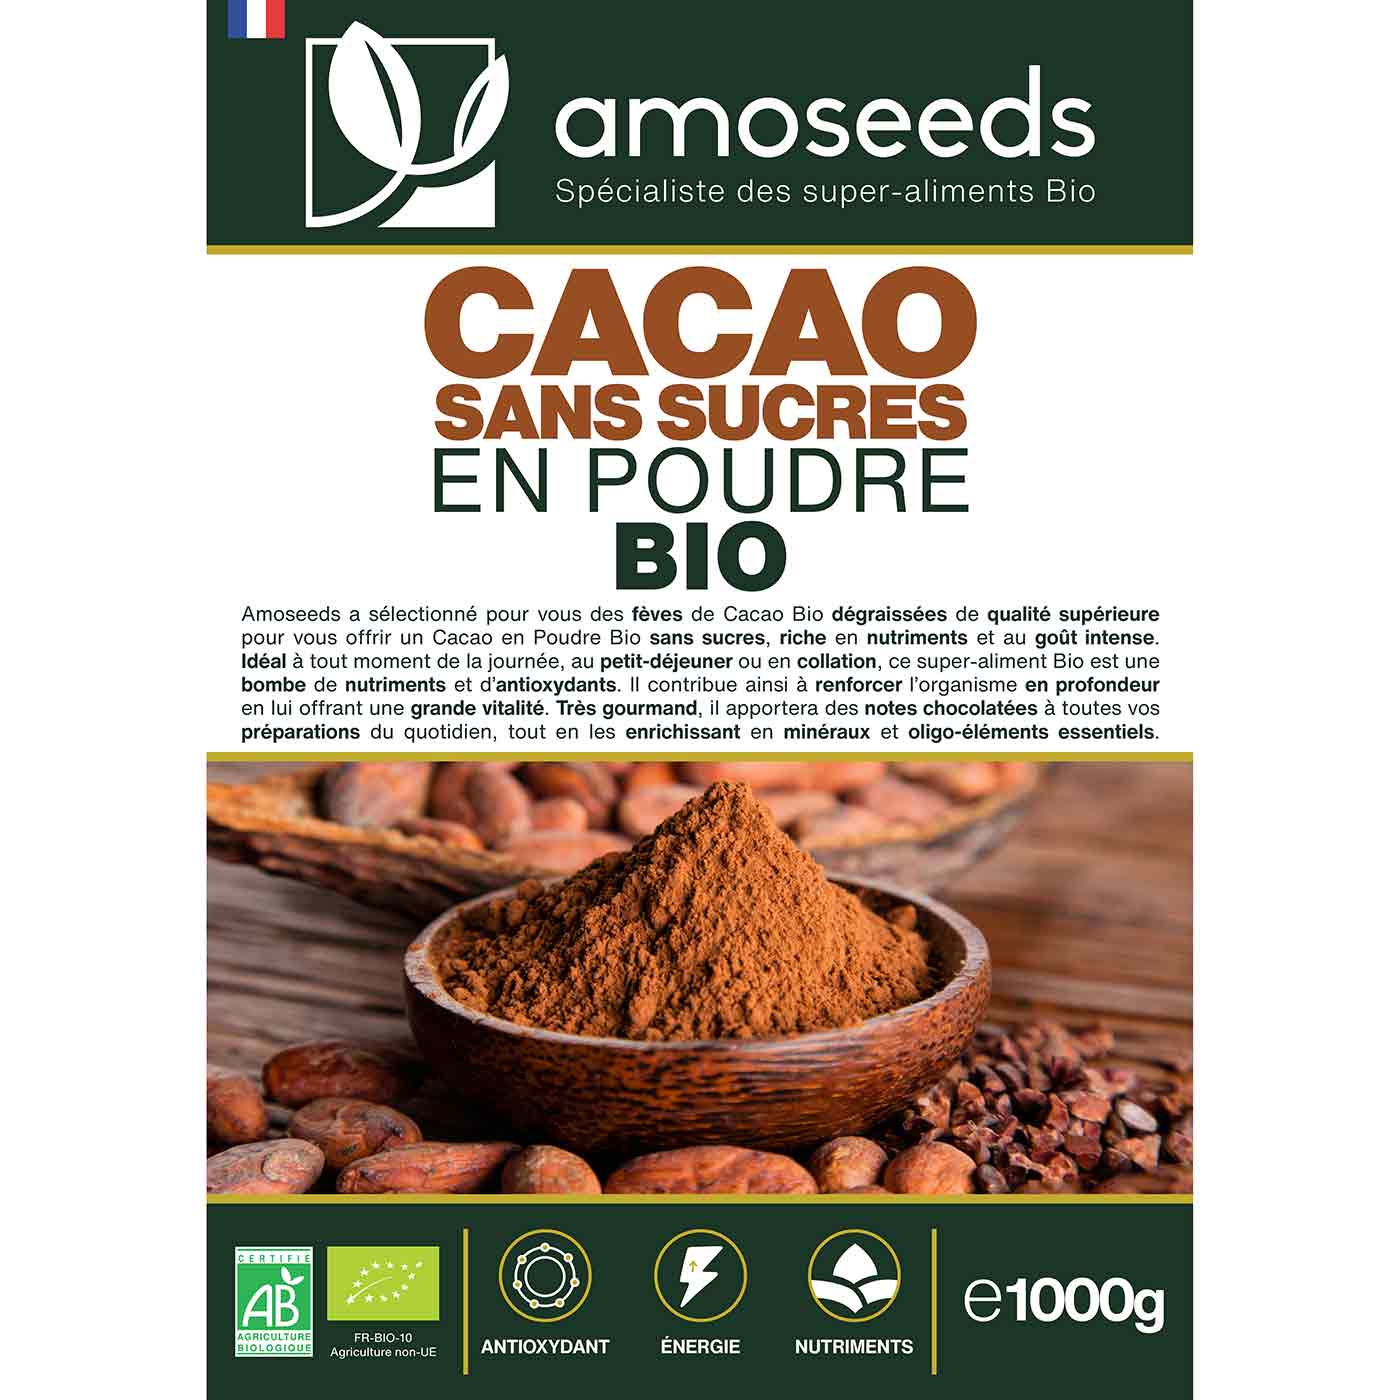 Cacao sans sucre en poudre Bio amoseeds specialiste des super aliments bio,